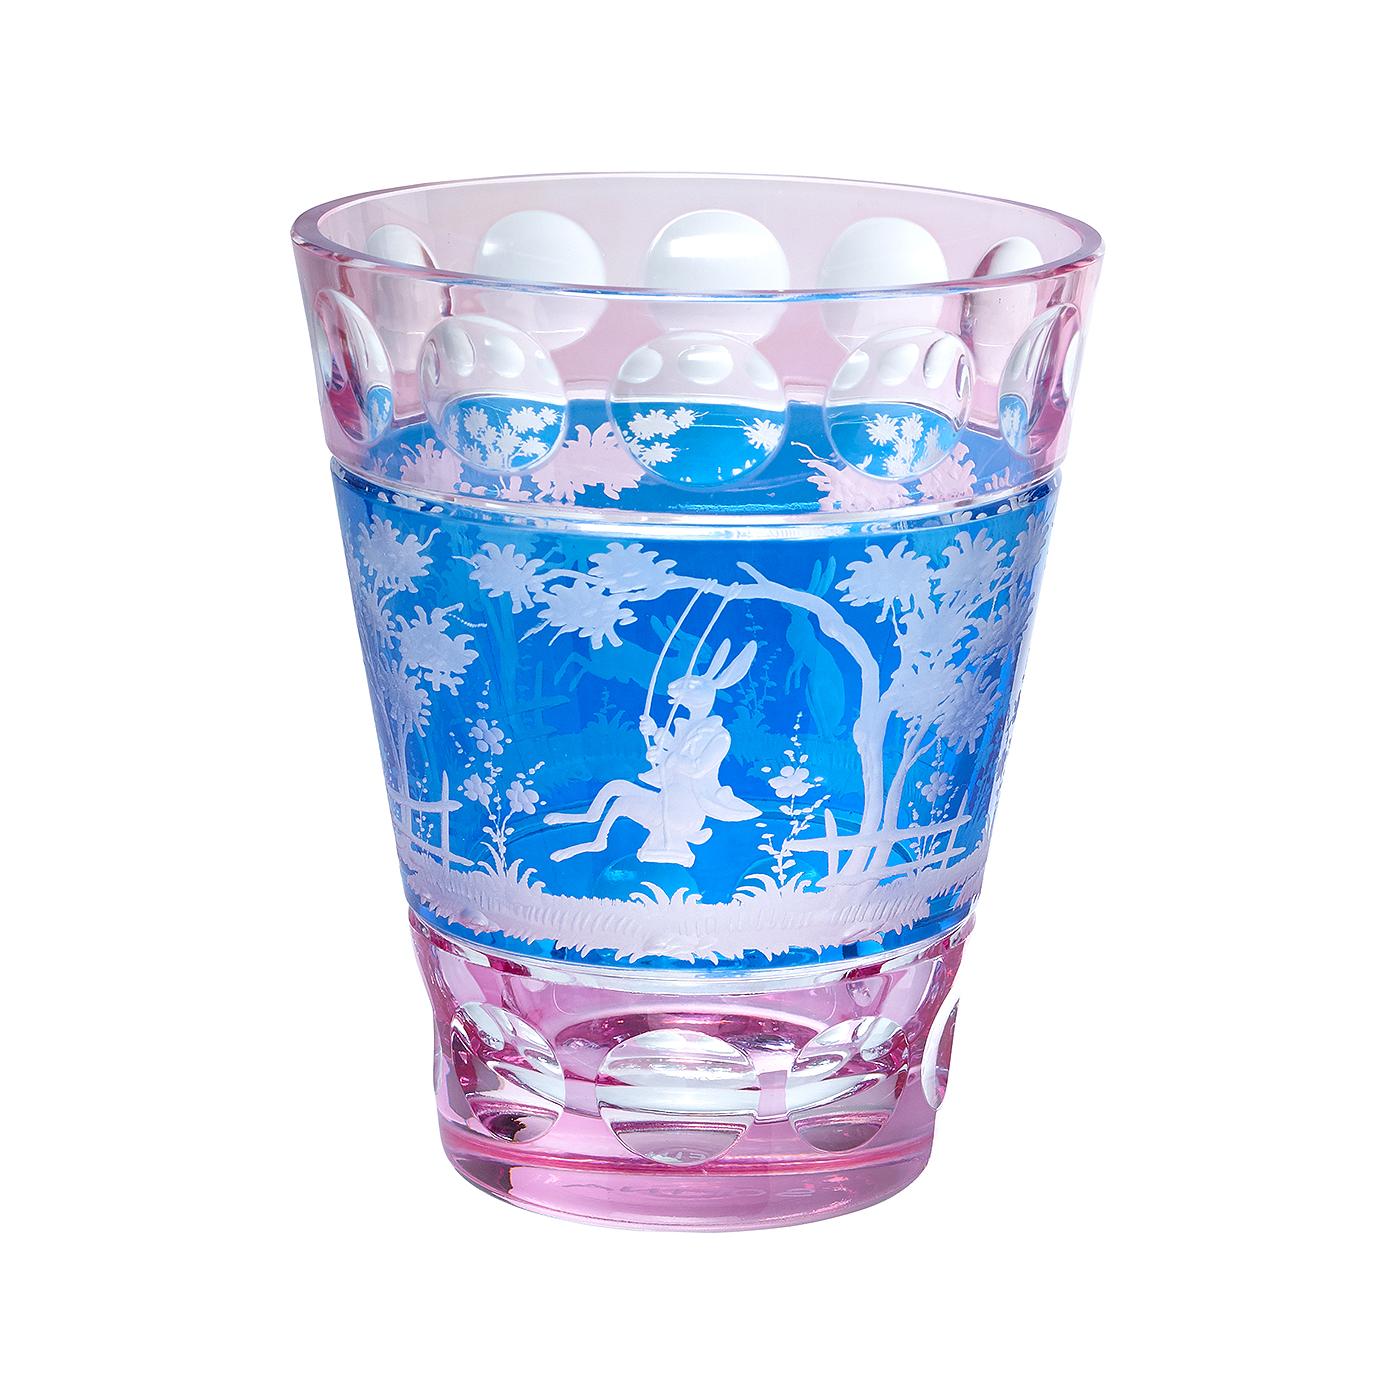 Vase en cristal soufflé à la main en verre rose et bleu avec une scène orientale vintage. Le décor est un décor de Pâques avec 2 lapins gravés à main levée dans un style naturaliste. Entièrement soufflé et gravé à la main en Bavière/Allemagne. Le